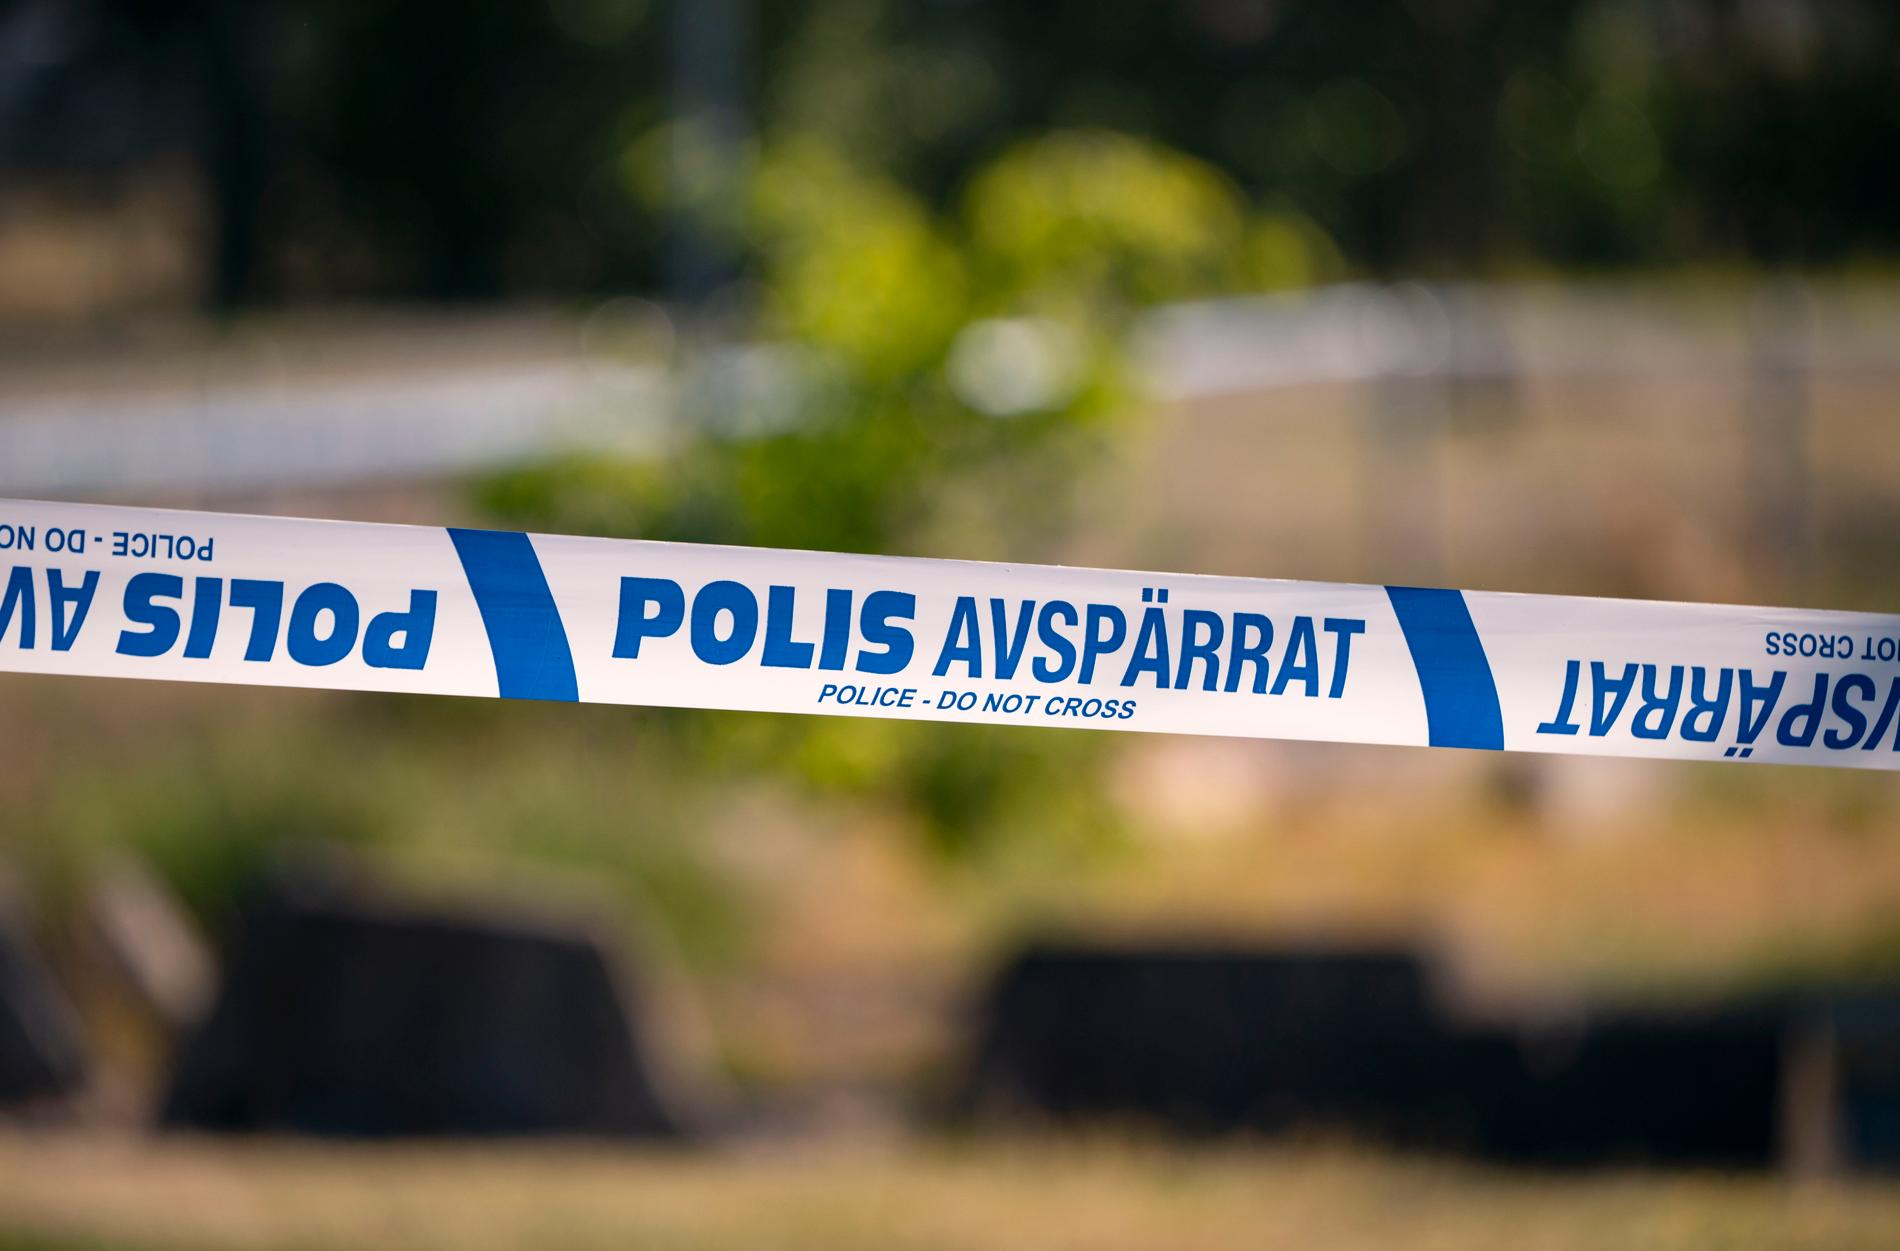 En lägenhet i Södertälje är avspärrad efter misstanke om mordbrand. Arkivbild.